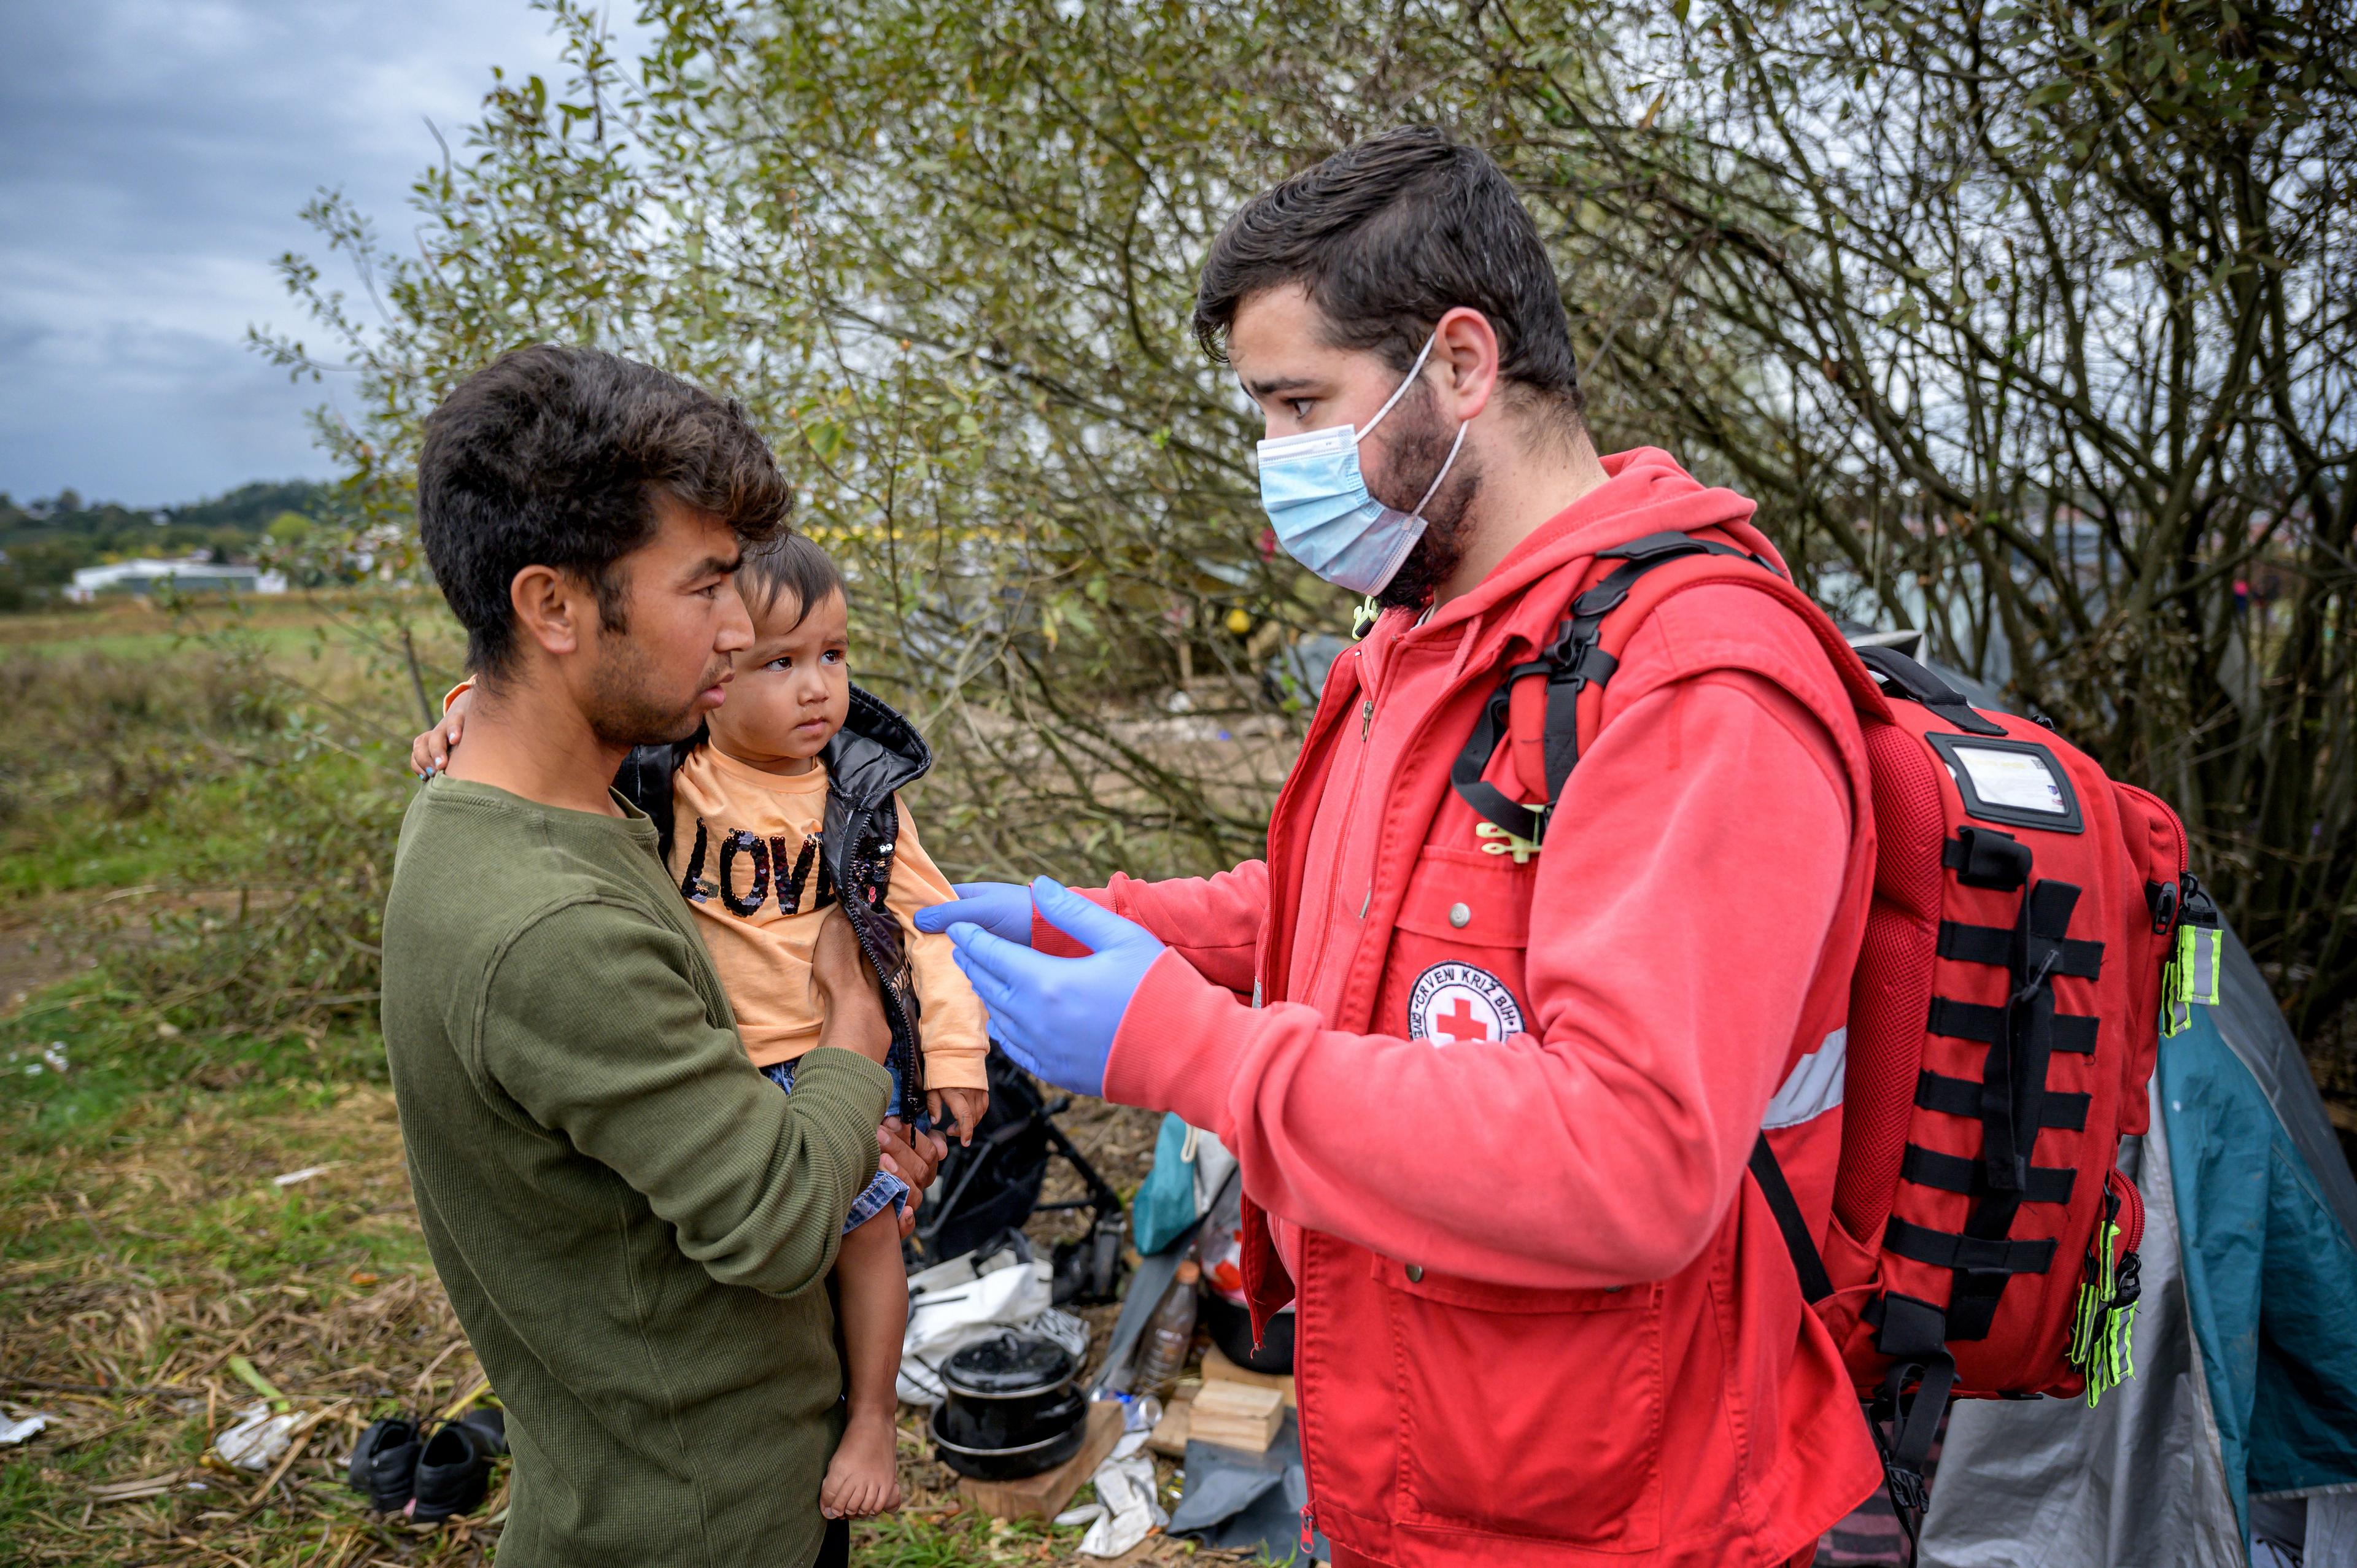 Un homme en uniforme de la Croix-Rouge s'approche d'un père et son enfant. Il semble contrôler l'état de santé de l'enfant.